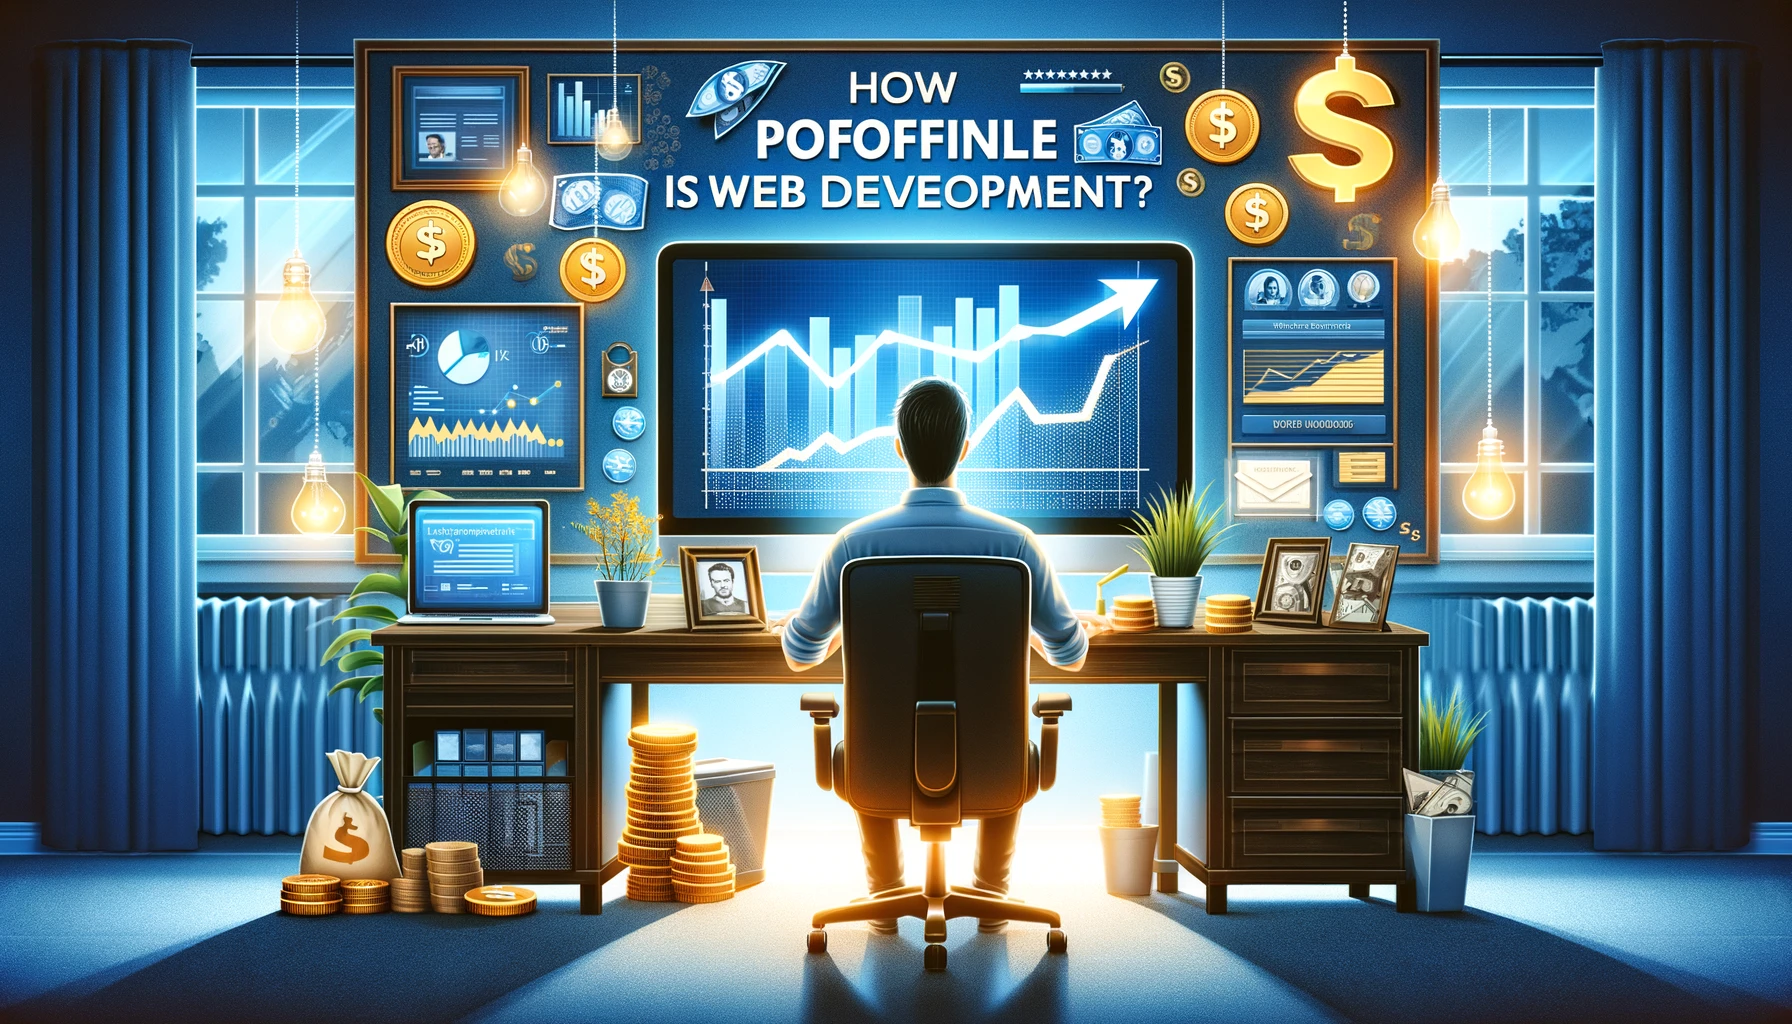 How profitable is web development?